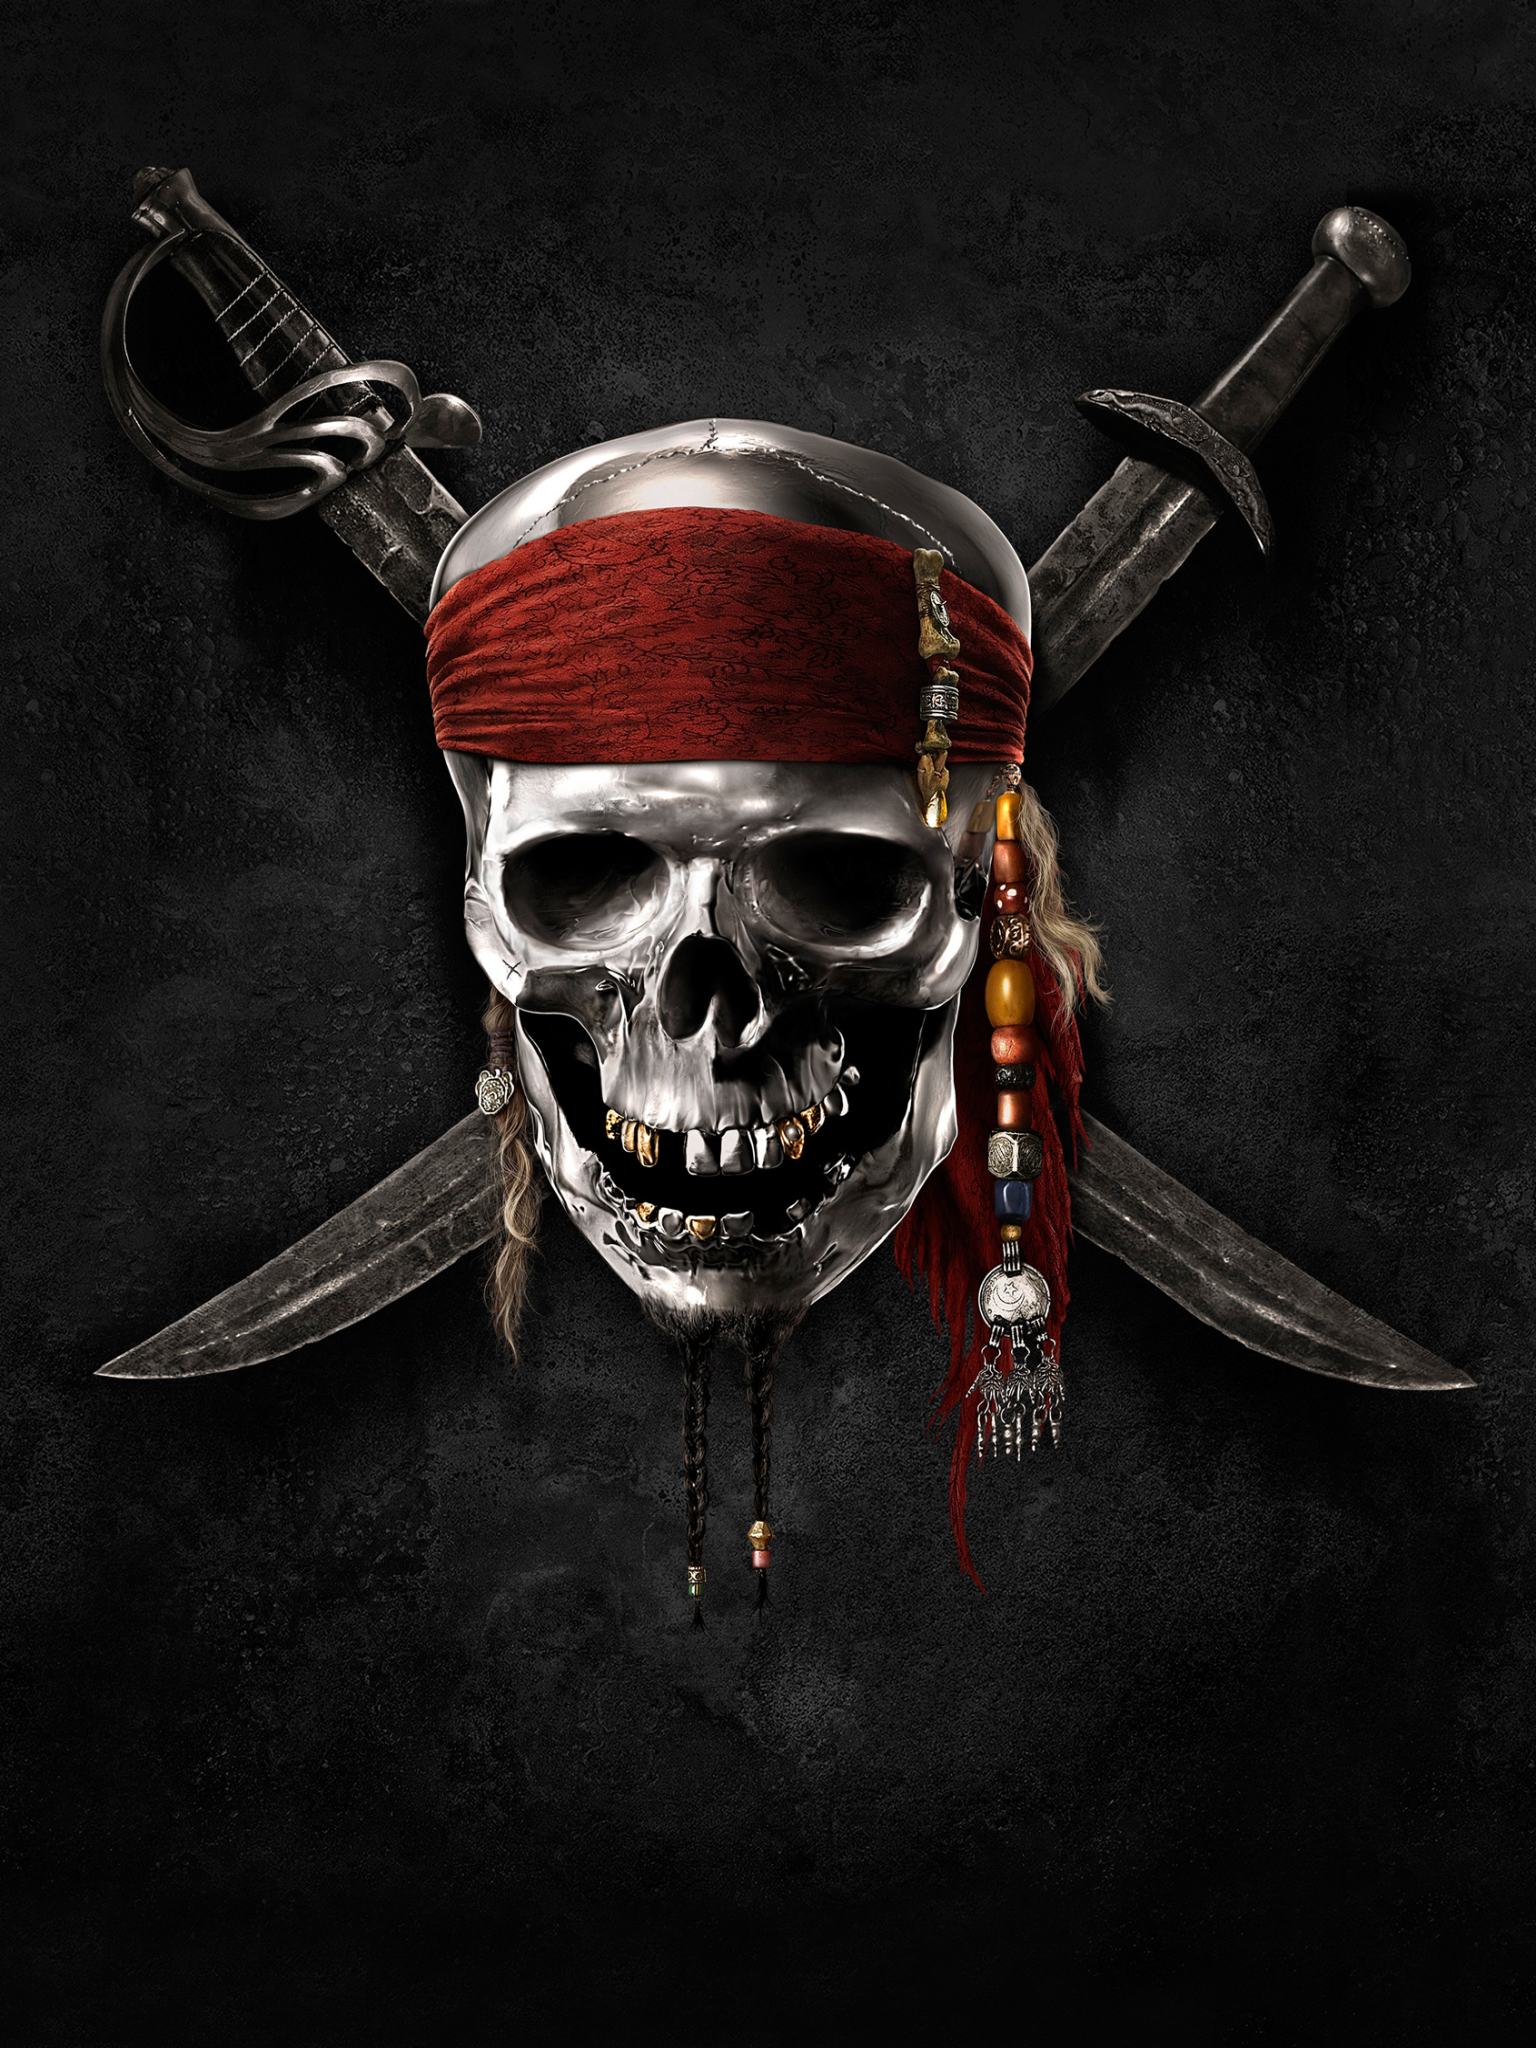 Baixar papel de parede para celular de Piratas Do Caribe, Filme gratuito.